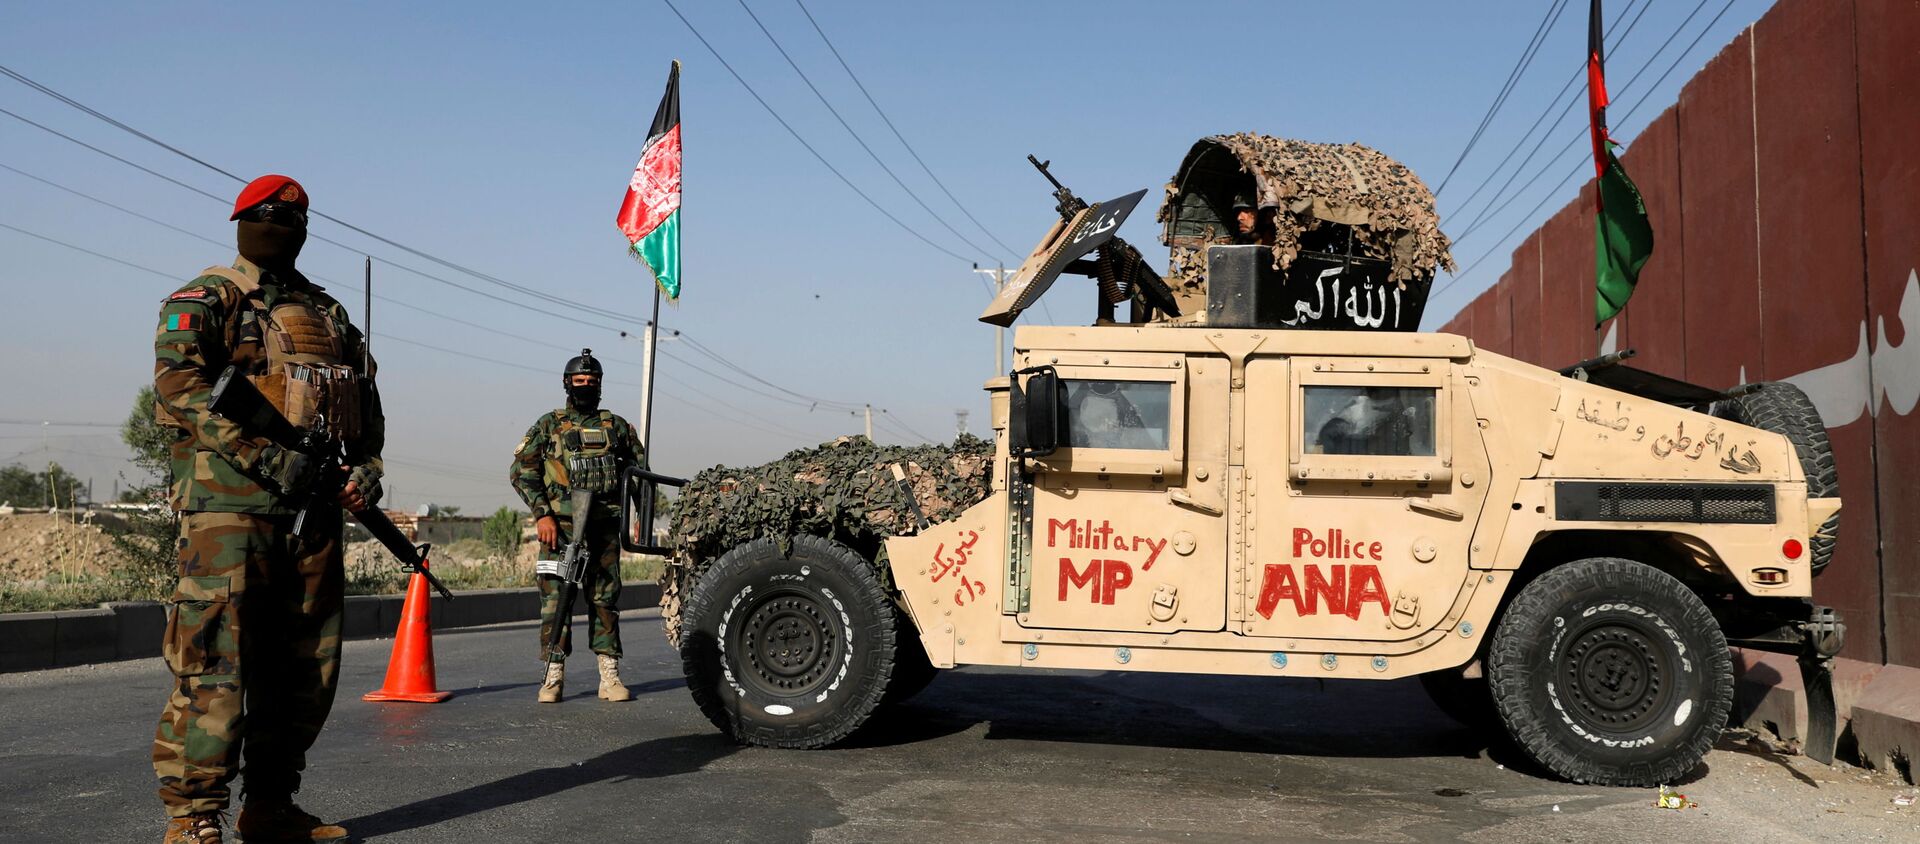 Офицеры Афганской национальной армии несут вахту на контрольно-пропускном пункте в Кабуле, Афганистан, 8 июля 2021 года. - Sputnik Абхазия, 1920, 15.08.2021